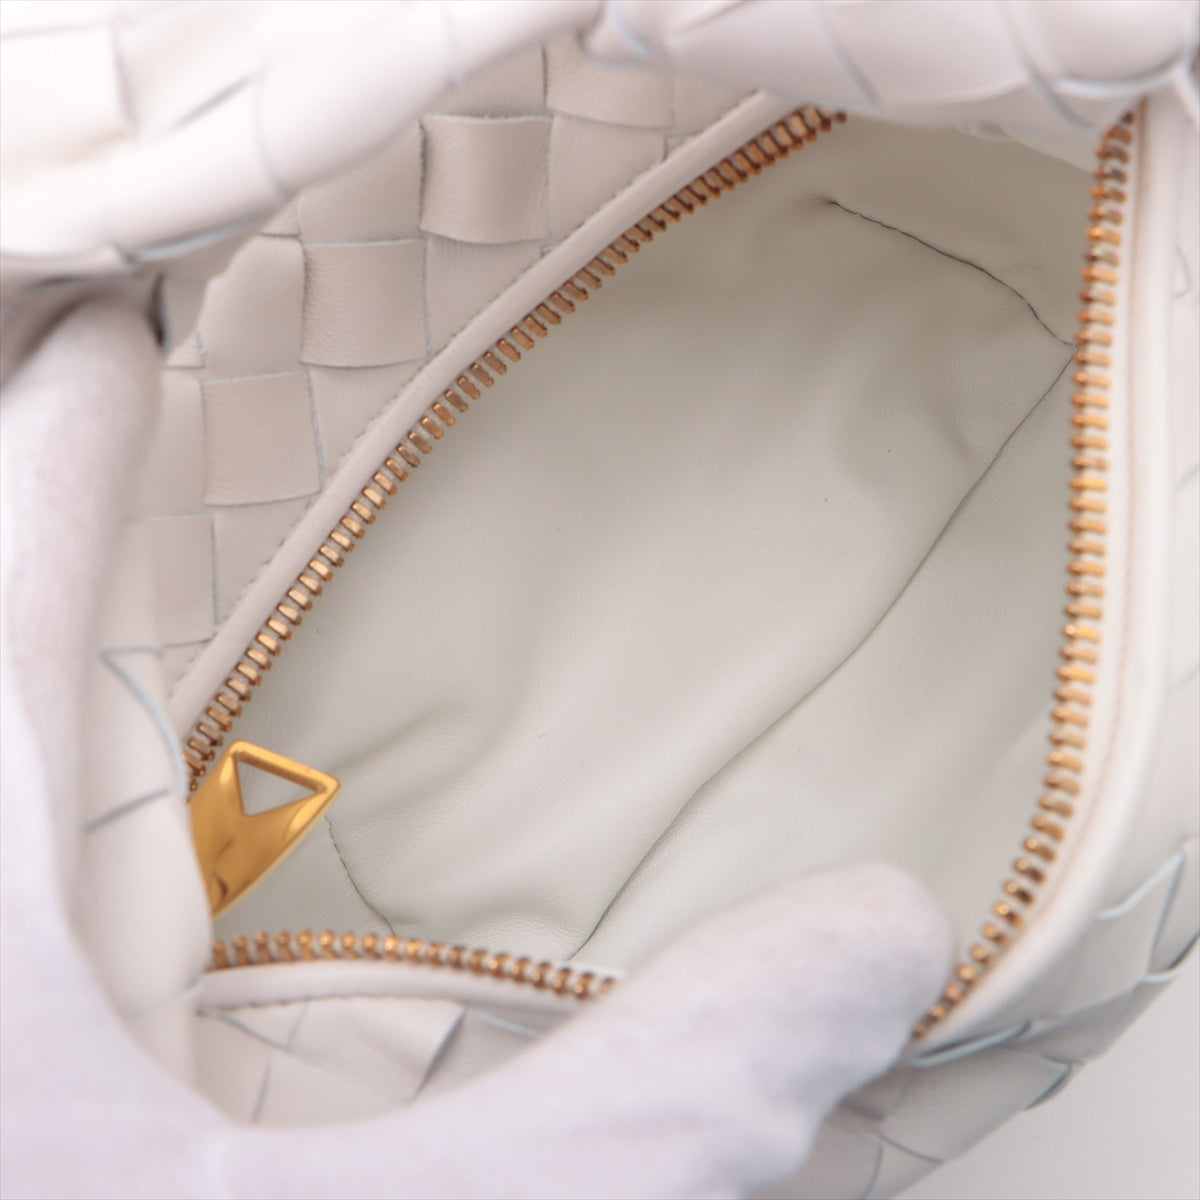 Bottega Veneta Mini The Jodie Interlude Leather Handbag White